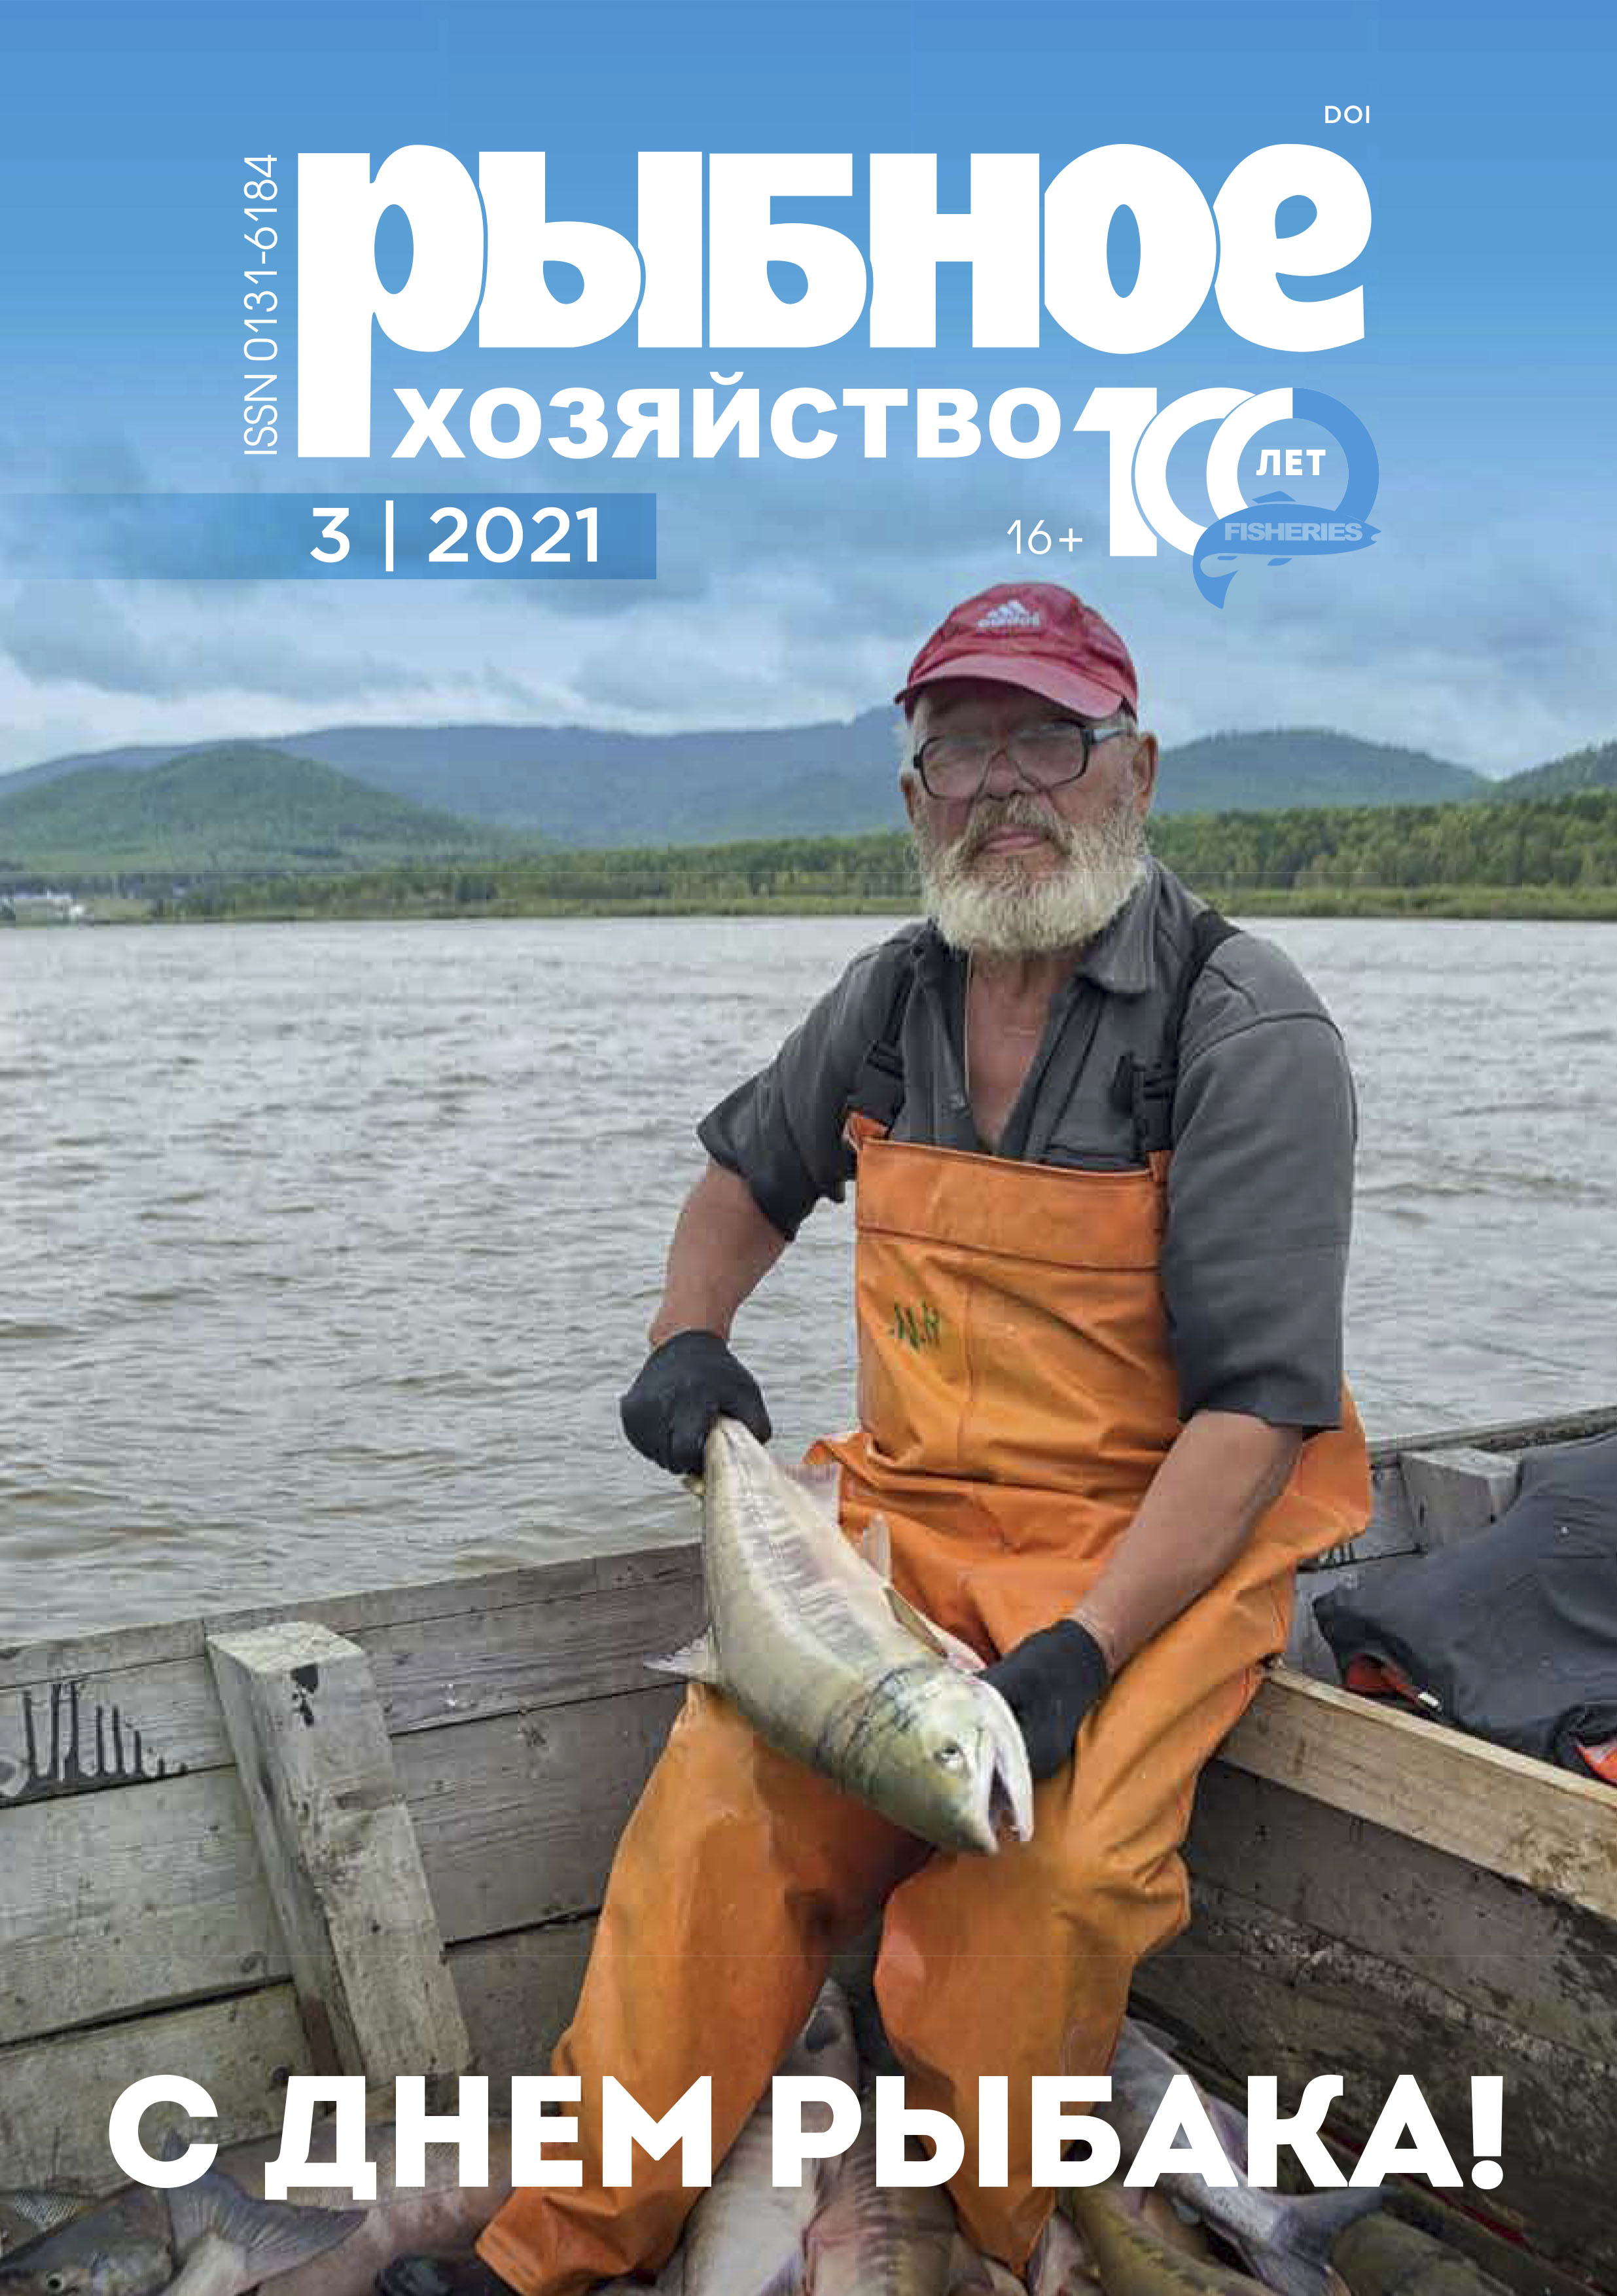             Индикаторная оценка состояния популяции рыбца в условиях дефицита биологической информации в Азовском море методом LBI
    